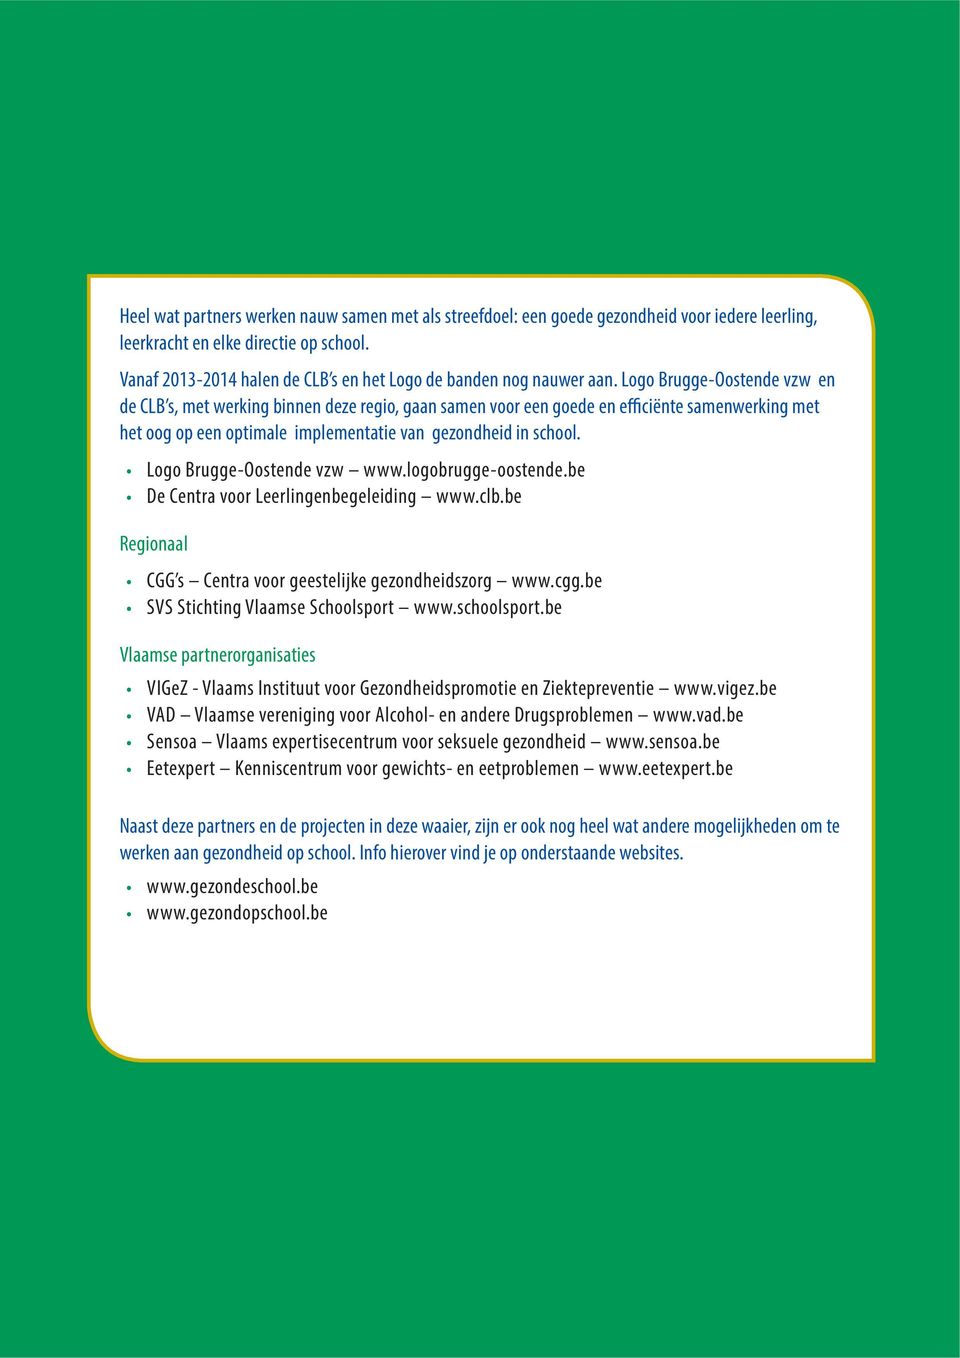 Logo Brugge-Oostende vzw en de CLB s, met werking binnen deze regio, gaan samen voor een goede en efficiënte samenwerking met het oog op een optimale implementatie van gezondheid in school.